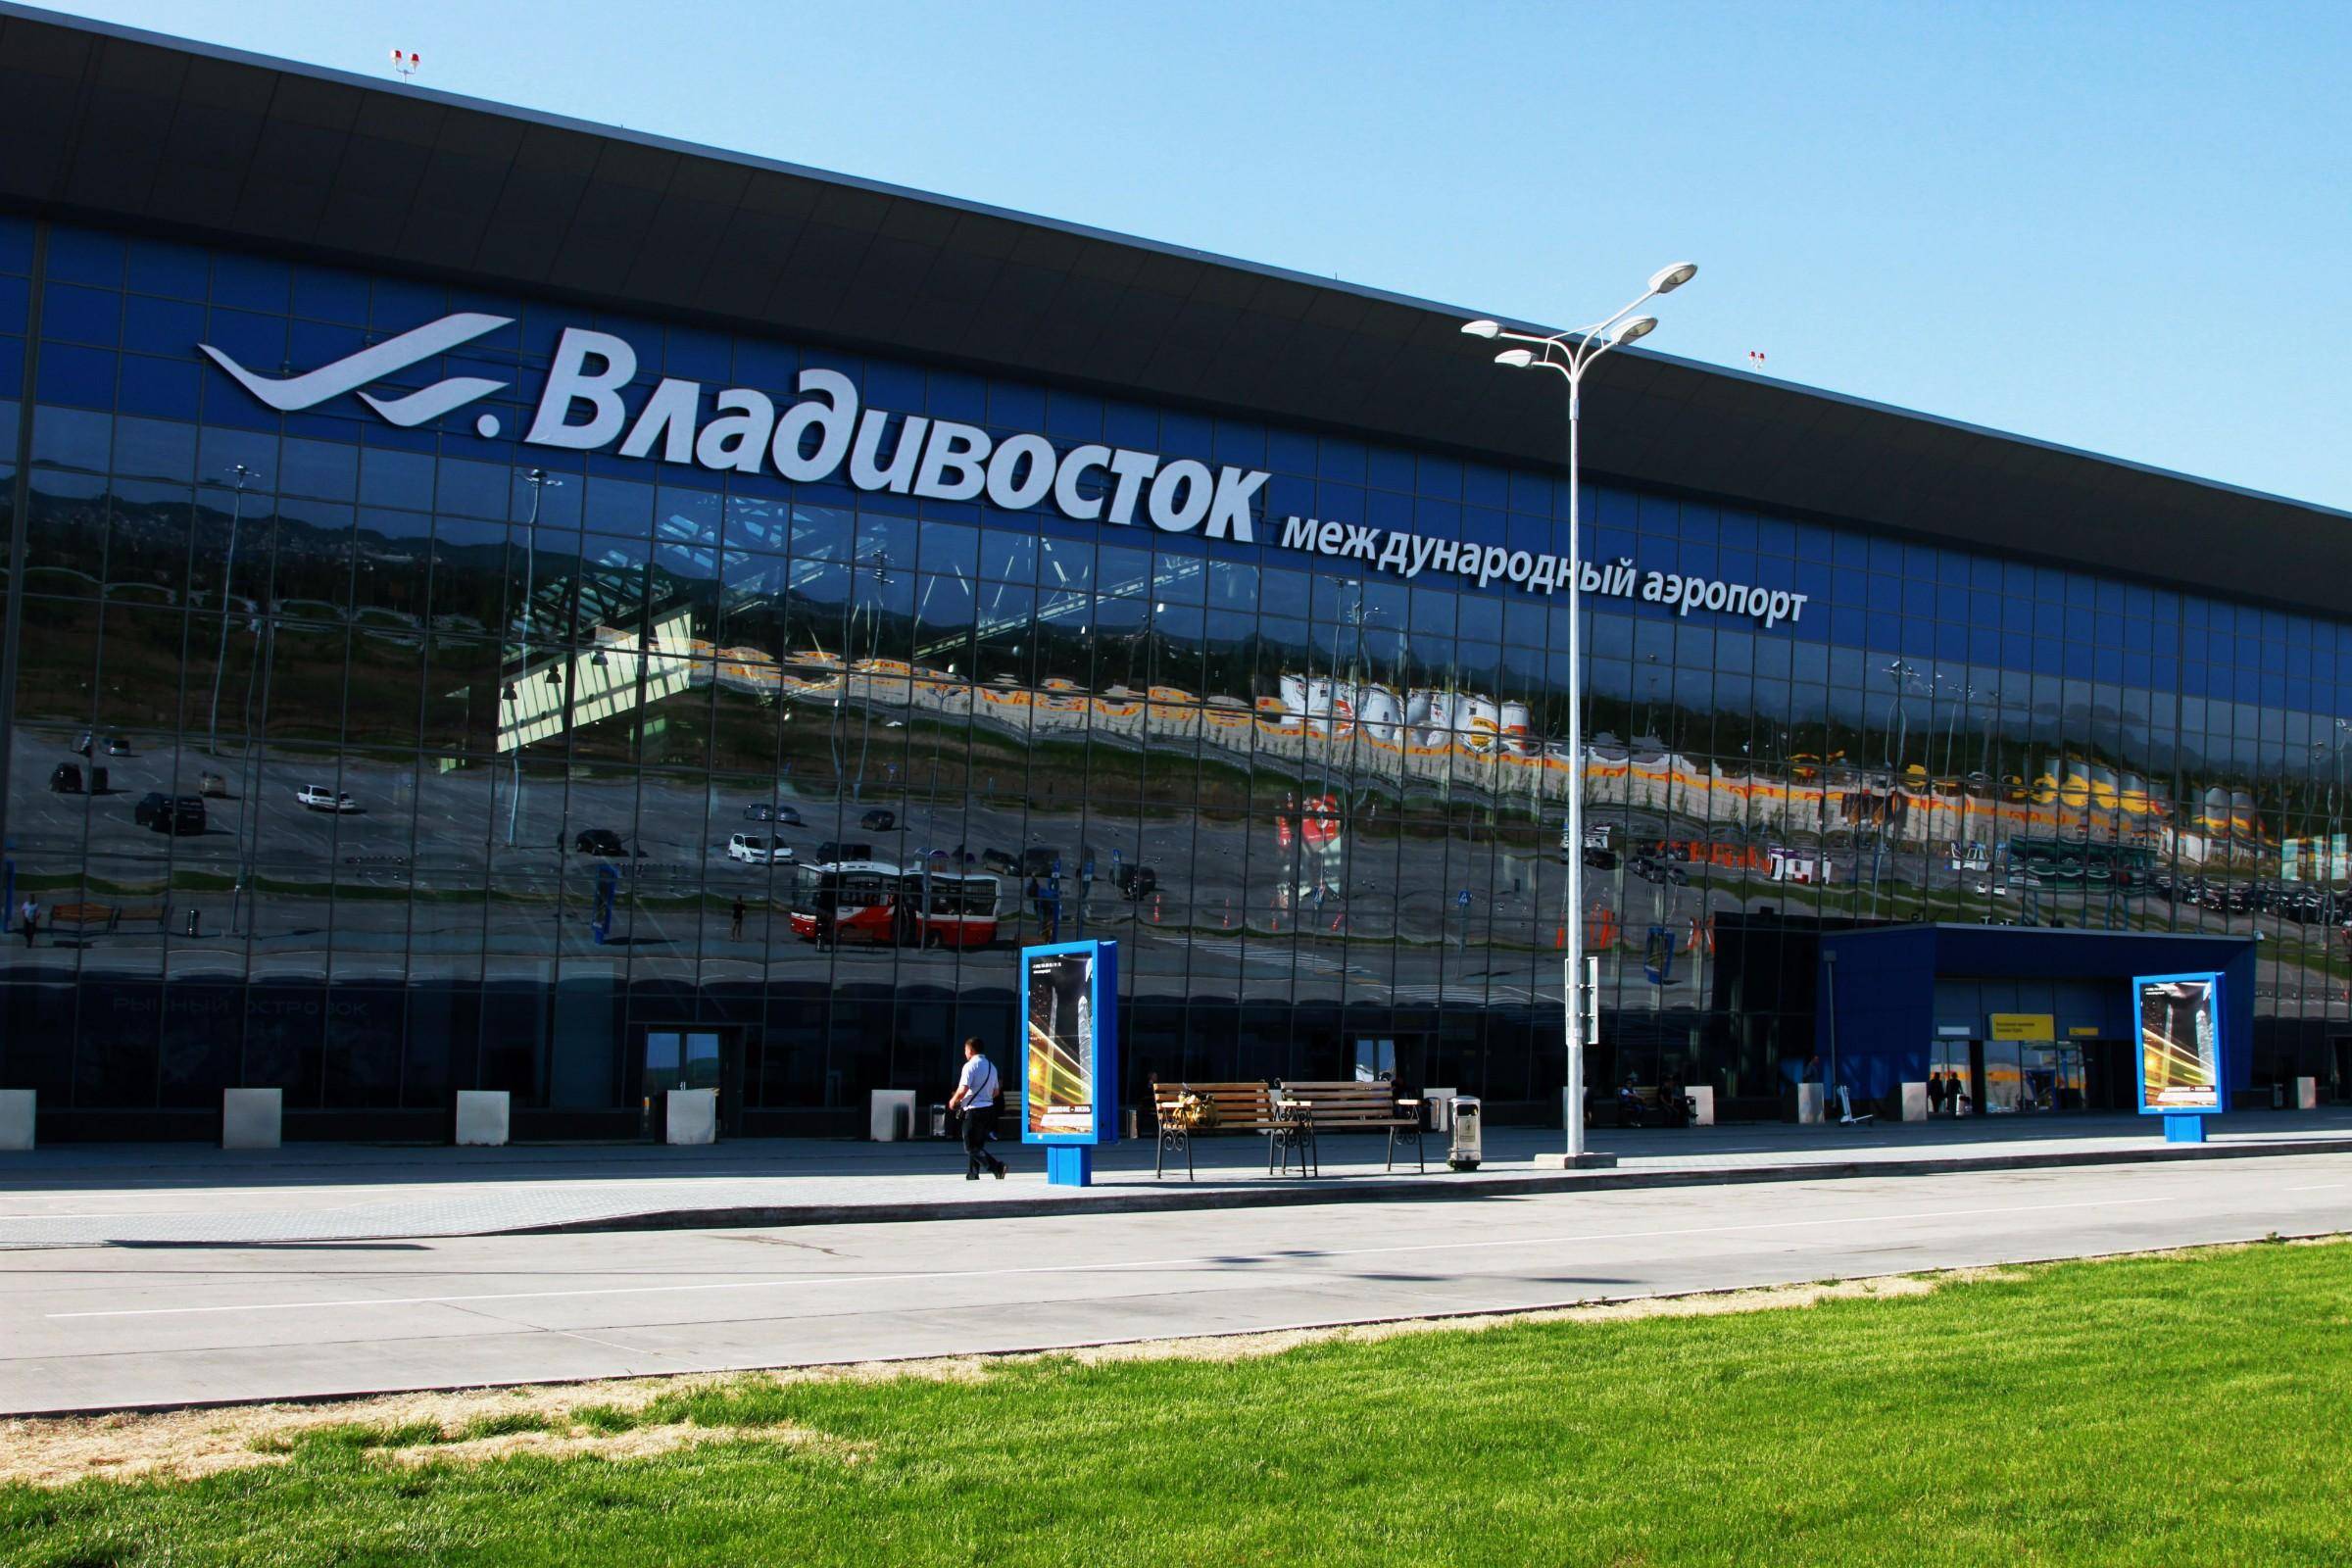 владивосток аэропорт самолет